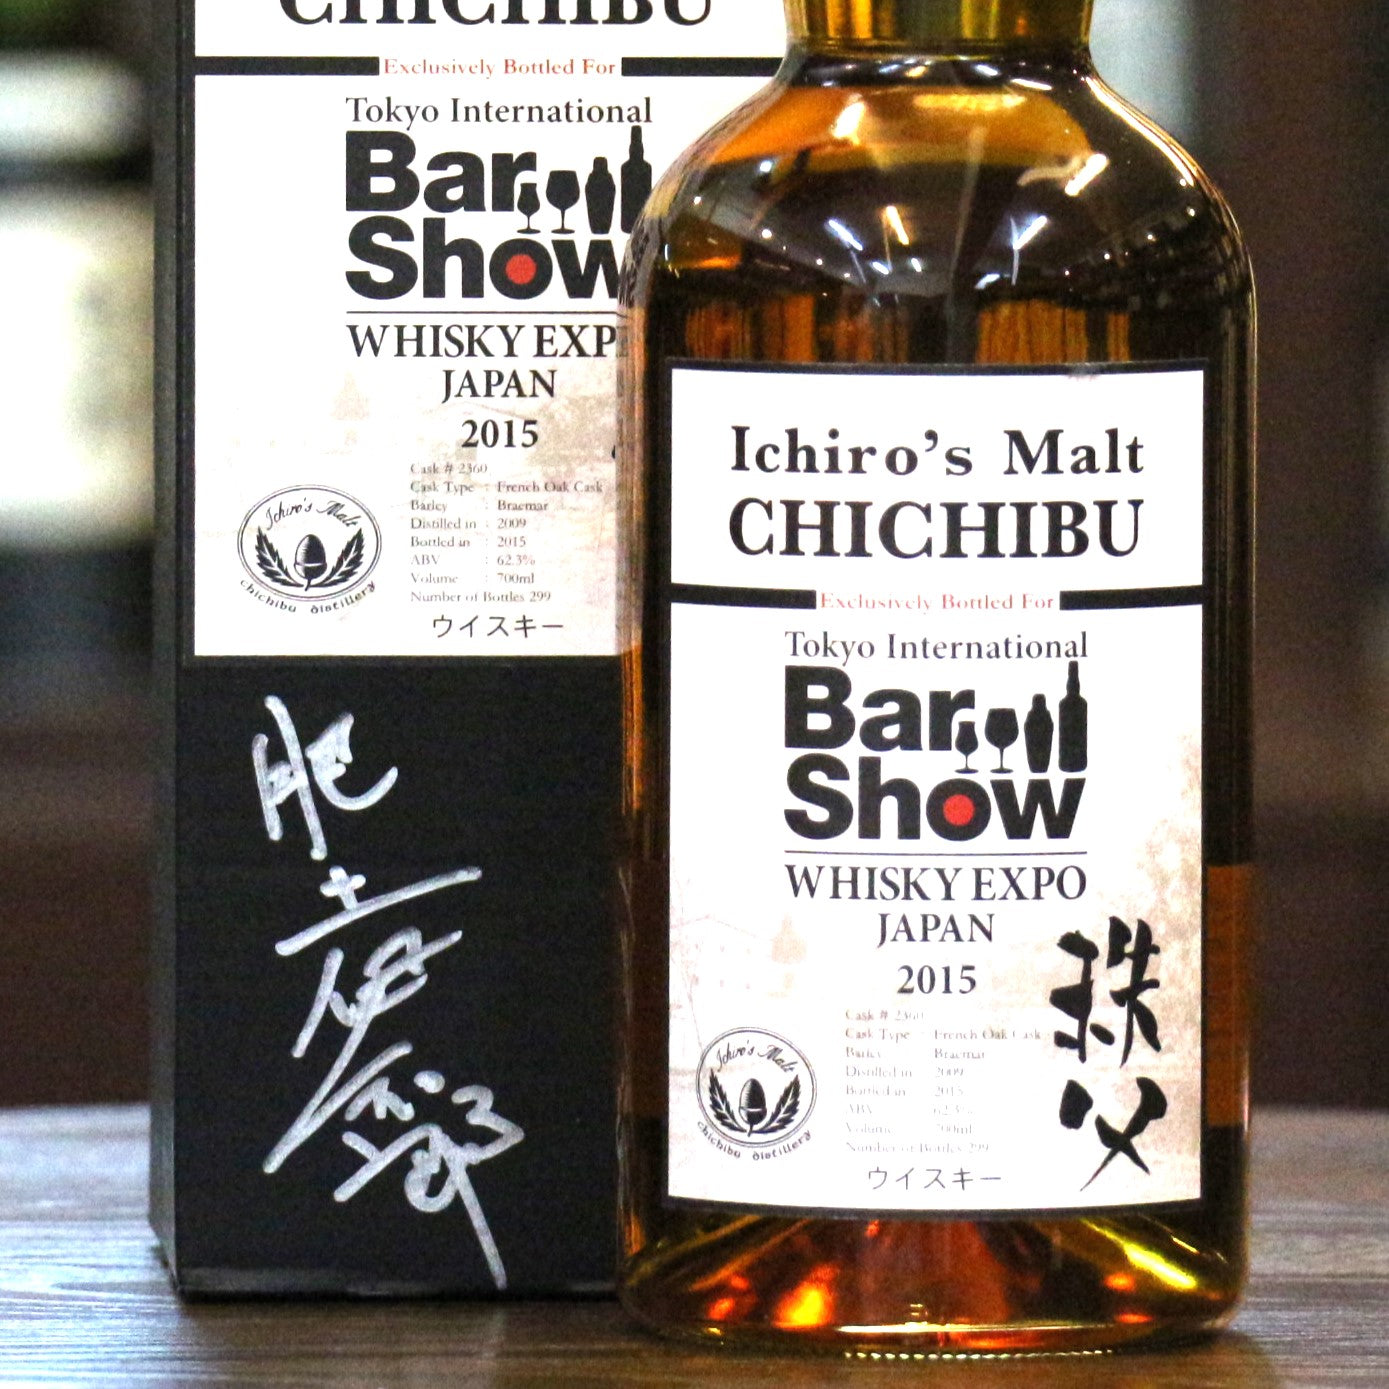 Ichiro's Malt 2015 Chichibu Barshow Single Cask #2360 Single Malt Whisky Signed by Ichiro Akuto